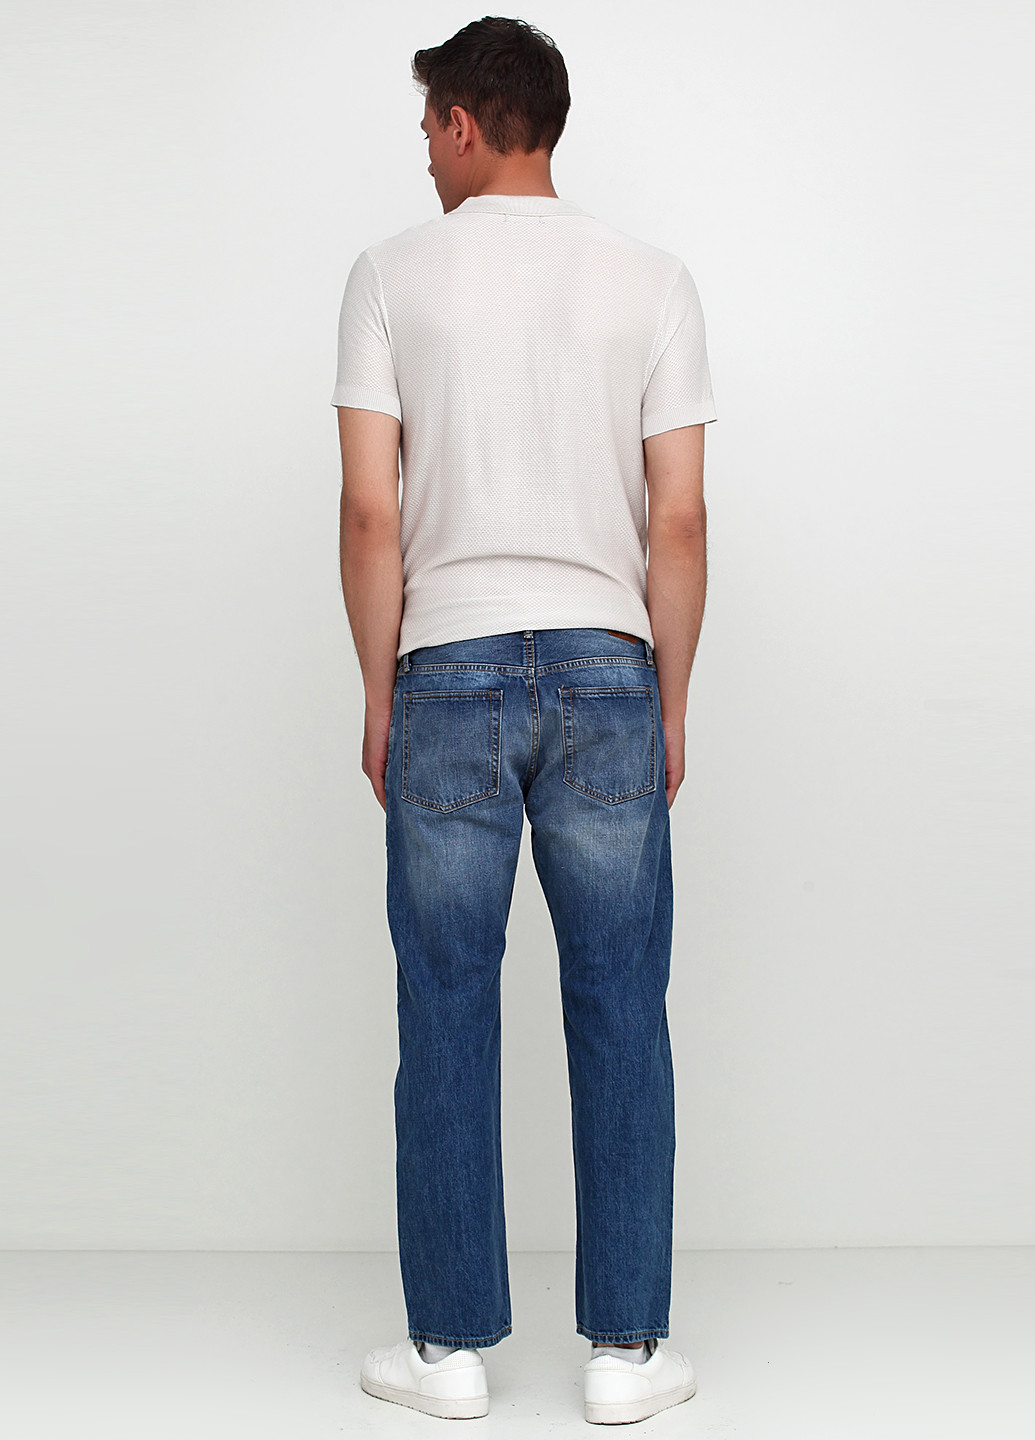 Светло-синие демисезонные со средней талией джинсы Gap